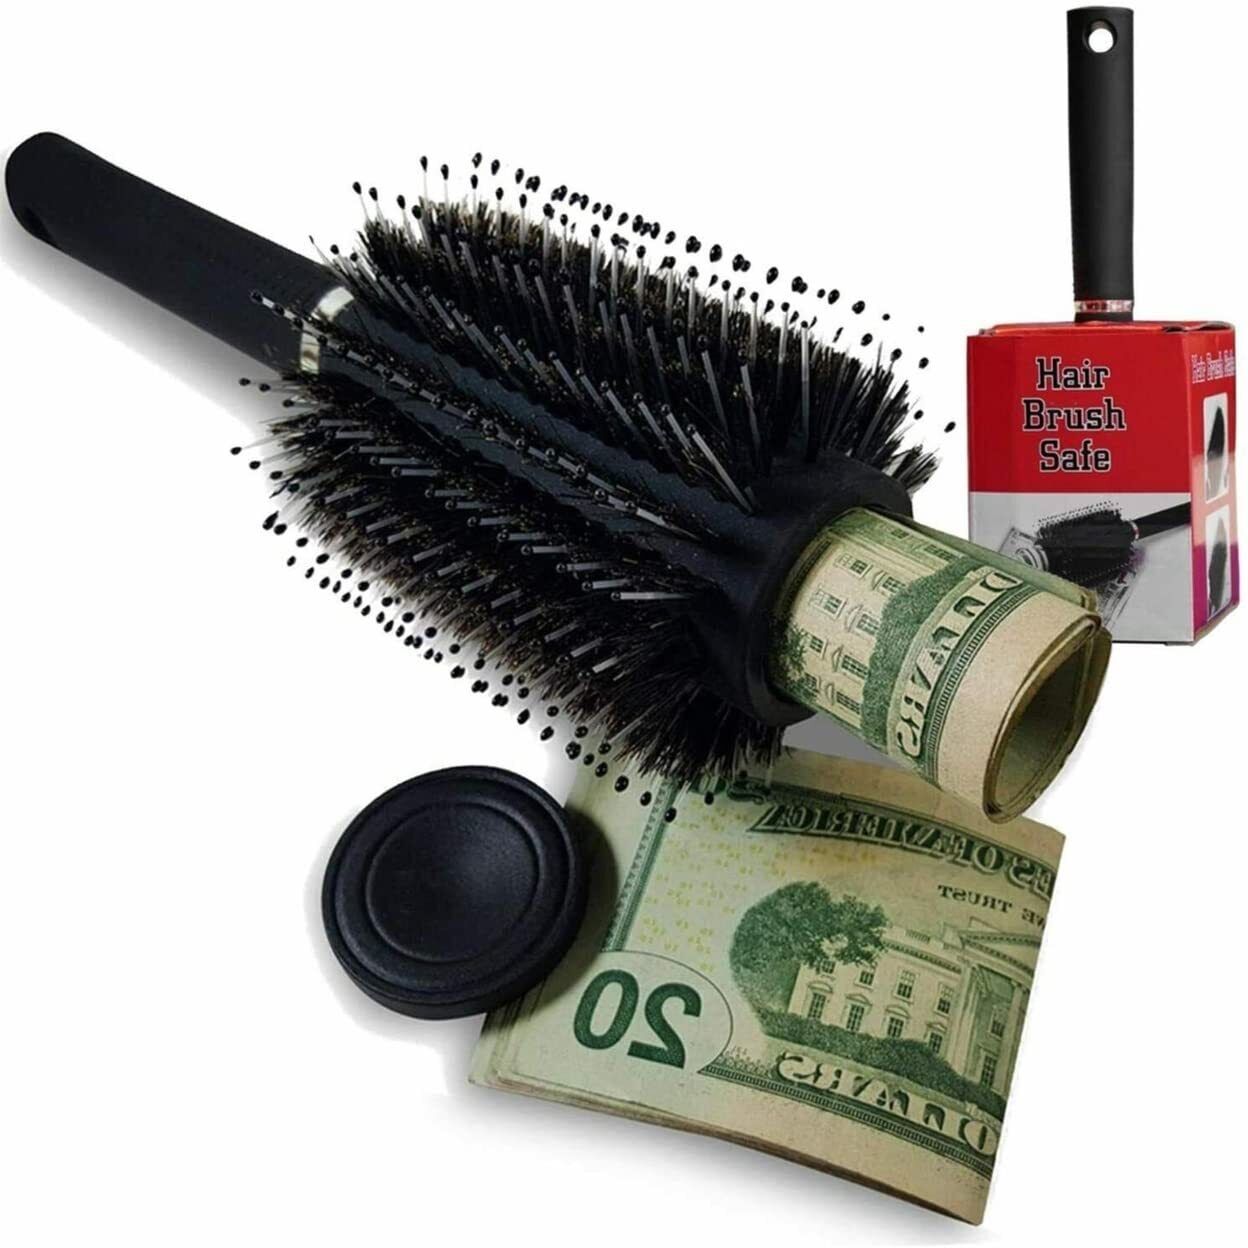 Hair Brush Diversion Safe Home Security Secret Compartment Pro...